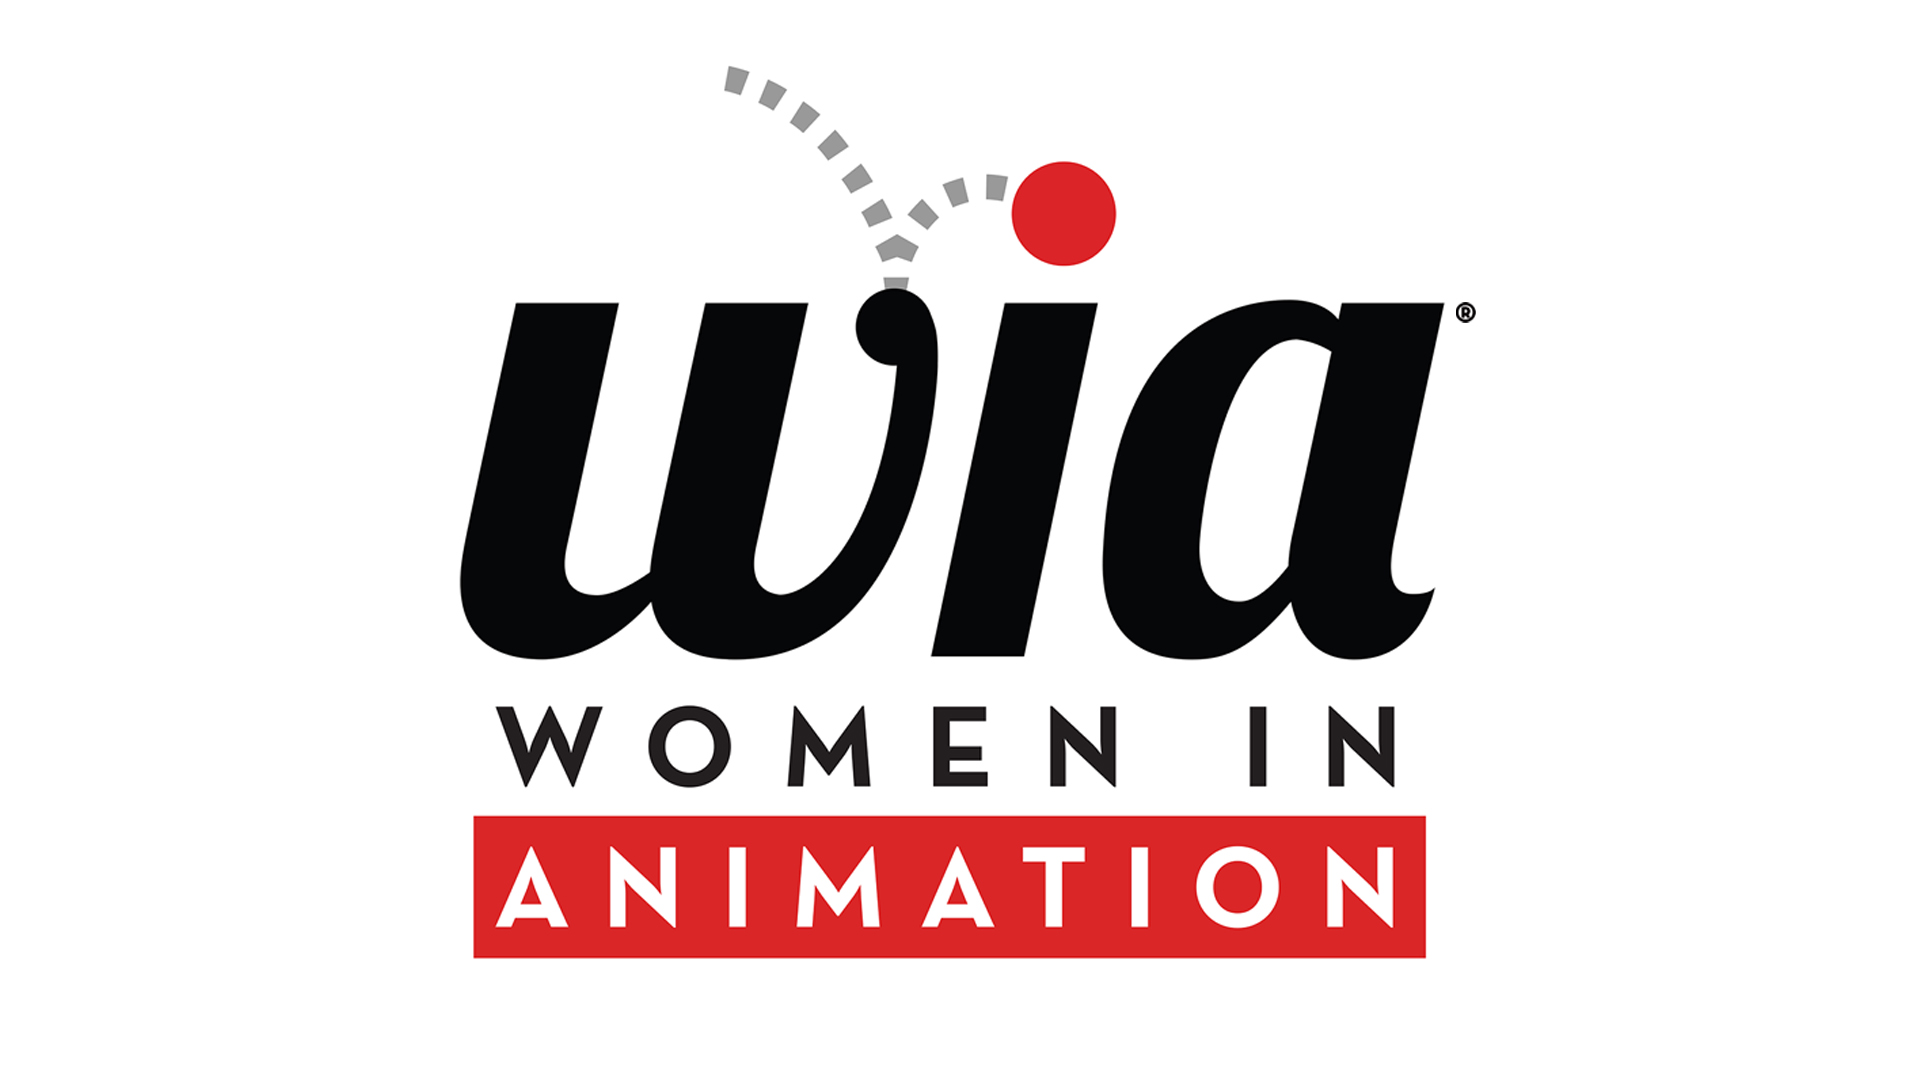 버추어스, Women in Animation에 대한 글로벌 펀드 스폰서로서의 지원 지속